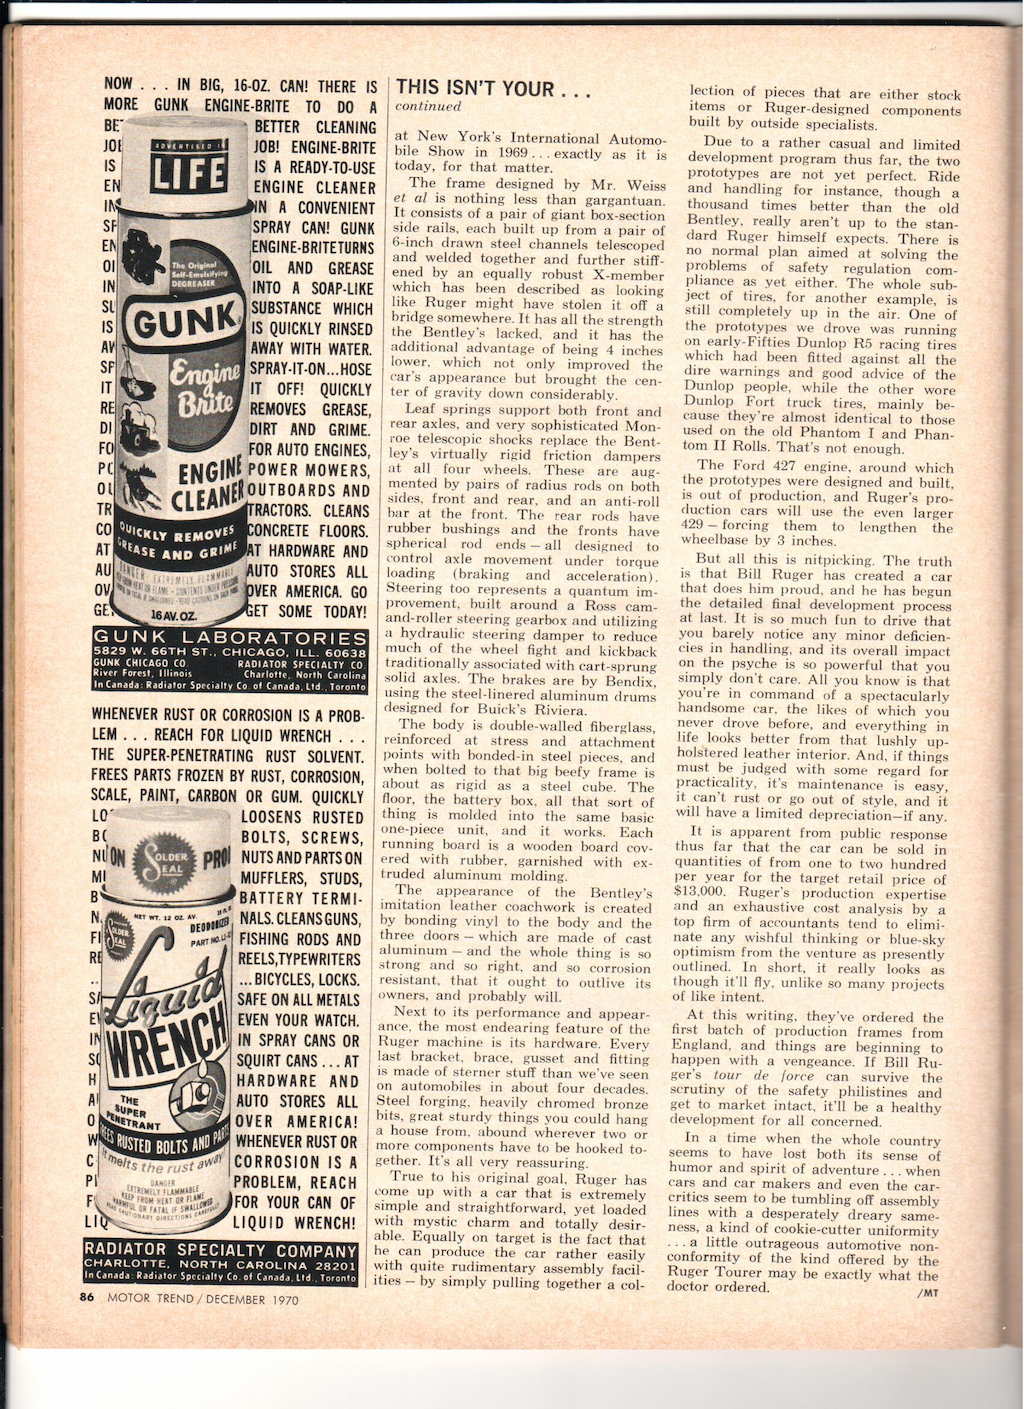 Ruger article MT 12-1970 4 web.jpg